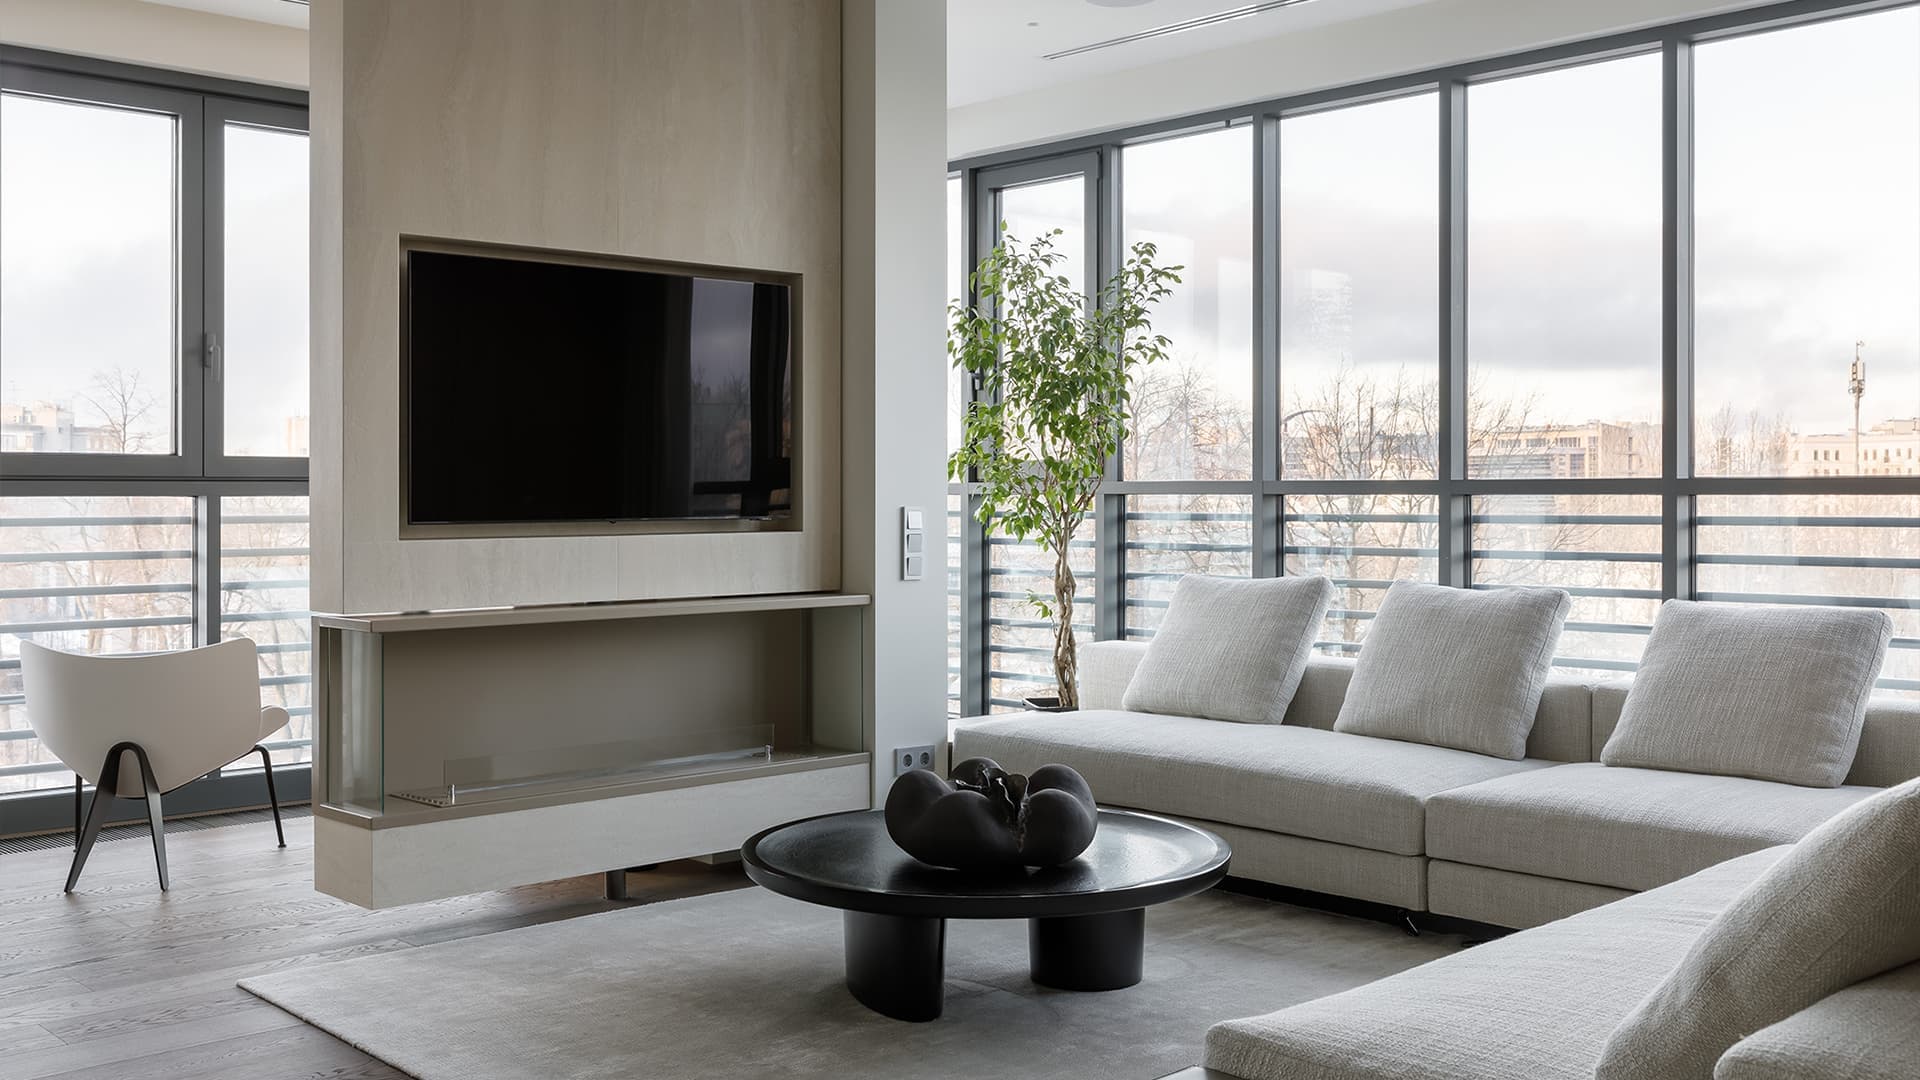 Сложность в простоте: продуманный интерьер двухсотметровой квартиры — проект Background Studio